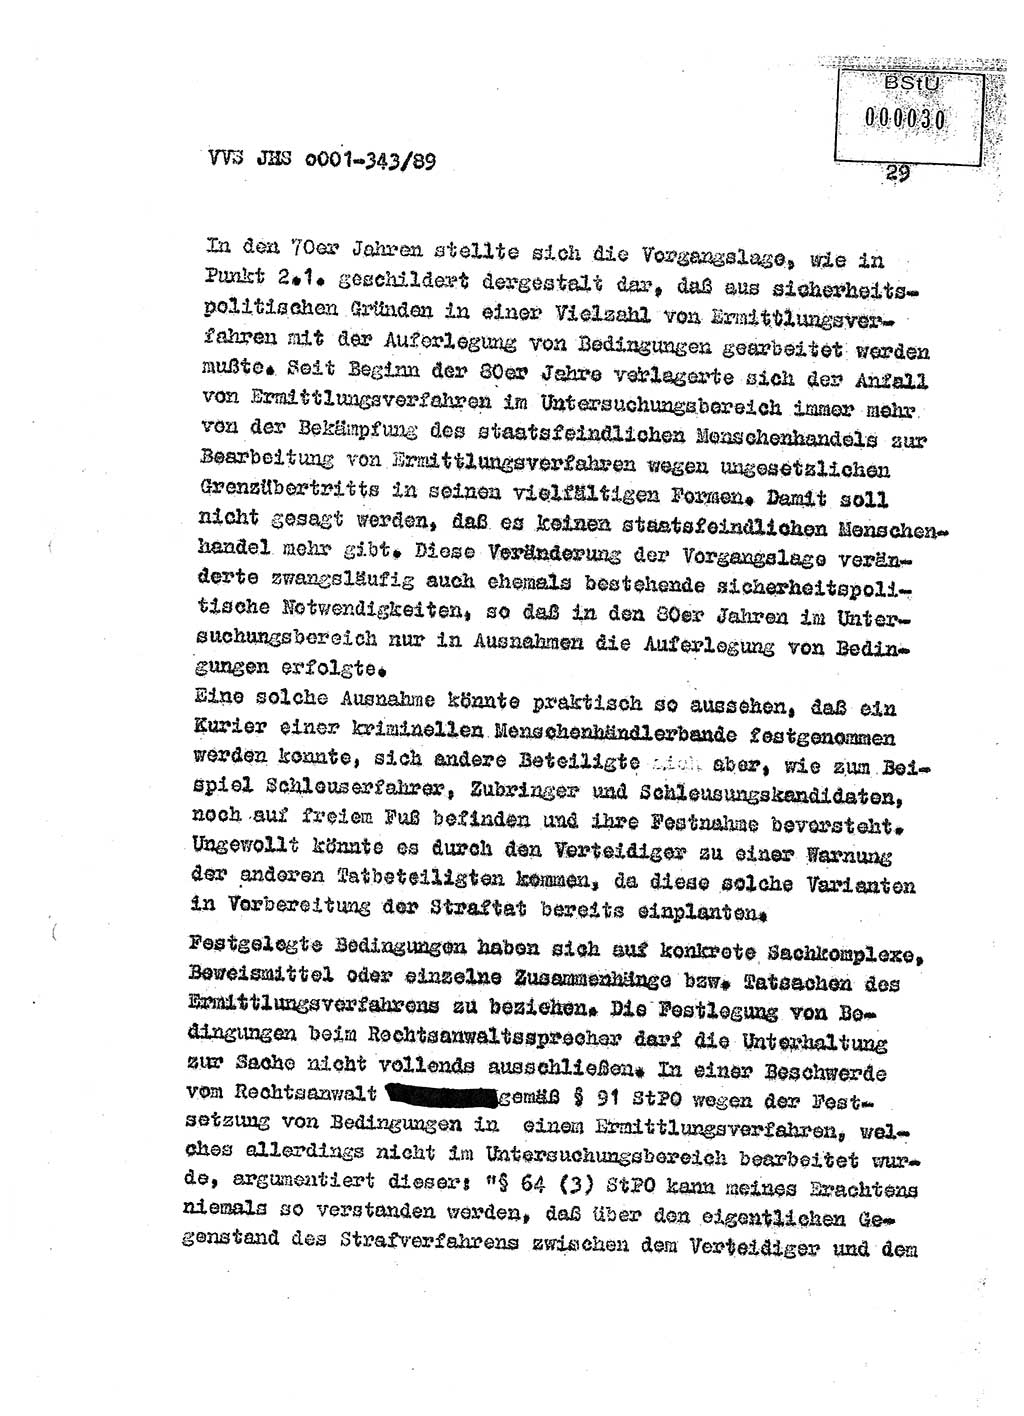 Diplomarbeit Offiziersschüler Axel Henschke (HA Ⅸ/9), Ministerium für Staatssicherheit (MfS) [Deutsche Demokratische Republik (DDR)], Juristische Hochschule (JHS), Vertrauliche Verschlußsache (VVS) o001-343/89, Potsdam 1989, Seite 29 (Dipl.-Arb. MfS DDR JHS VVS o001-343/89 1989, S. 29)